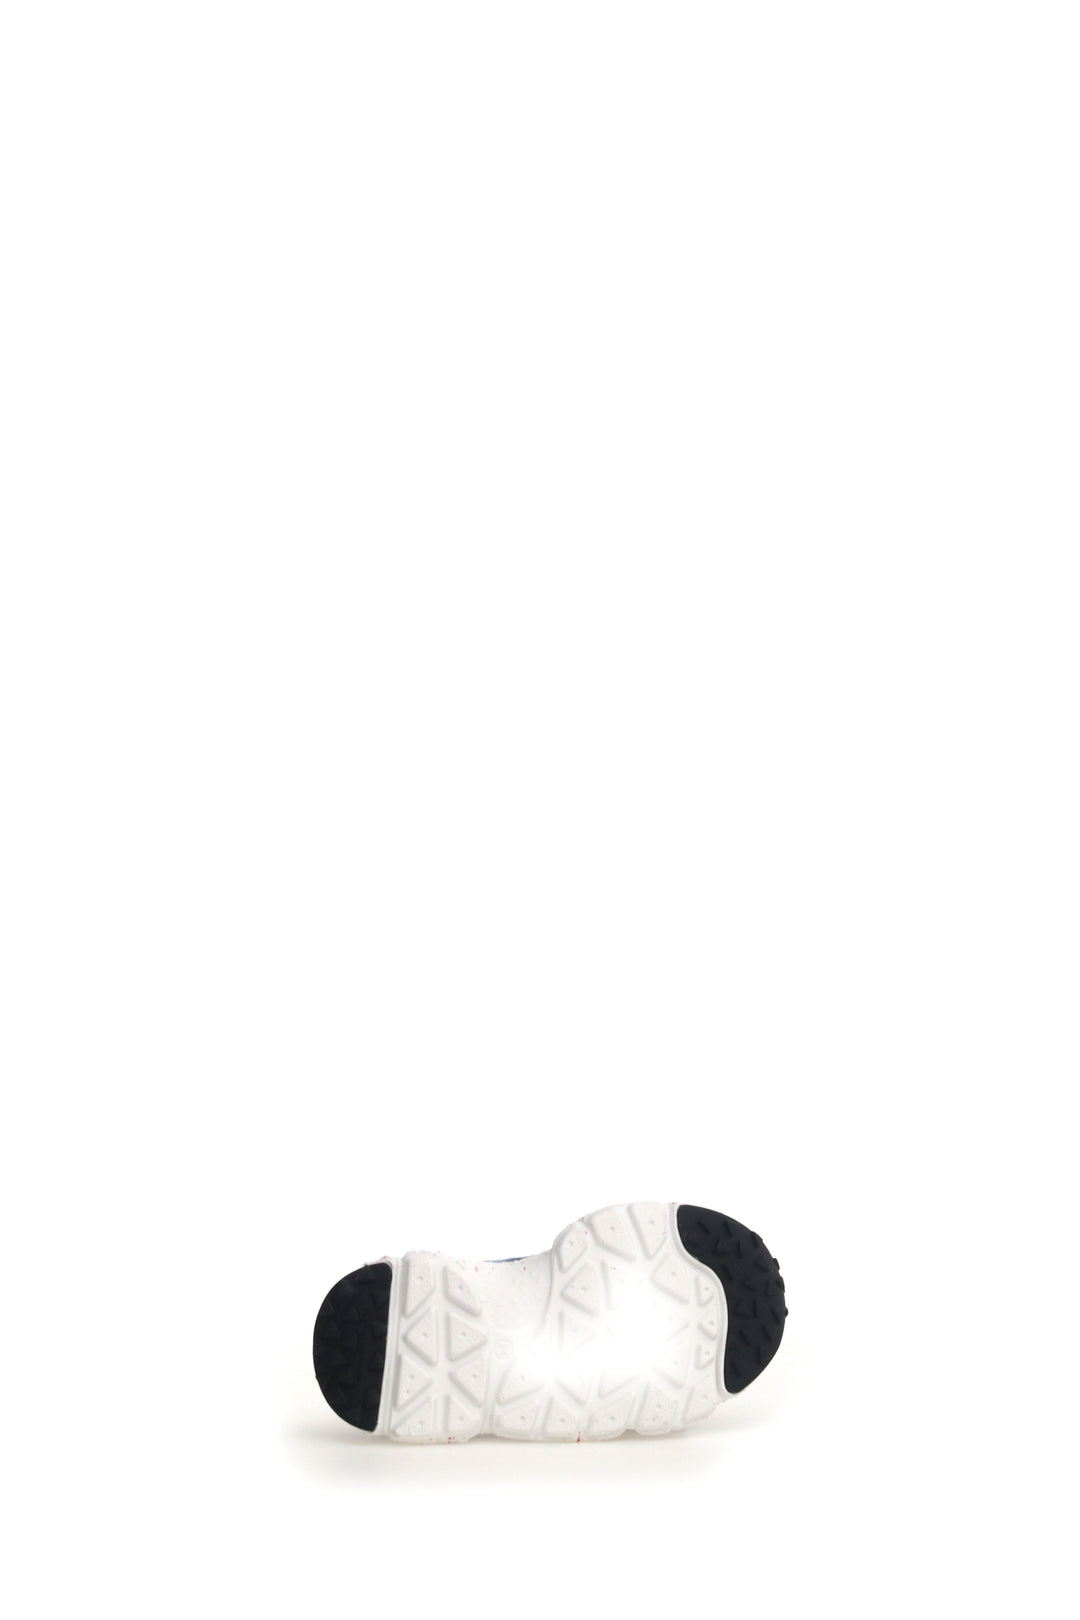 Sneakers Junior Yamano 3 Junior E-Calf / Nylon Pepper Sole White / Fuchsia